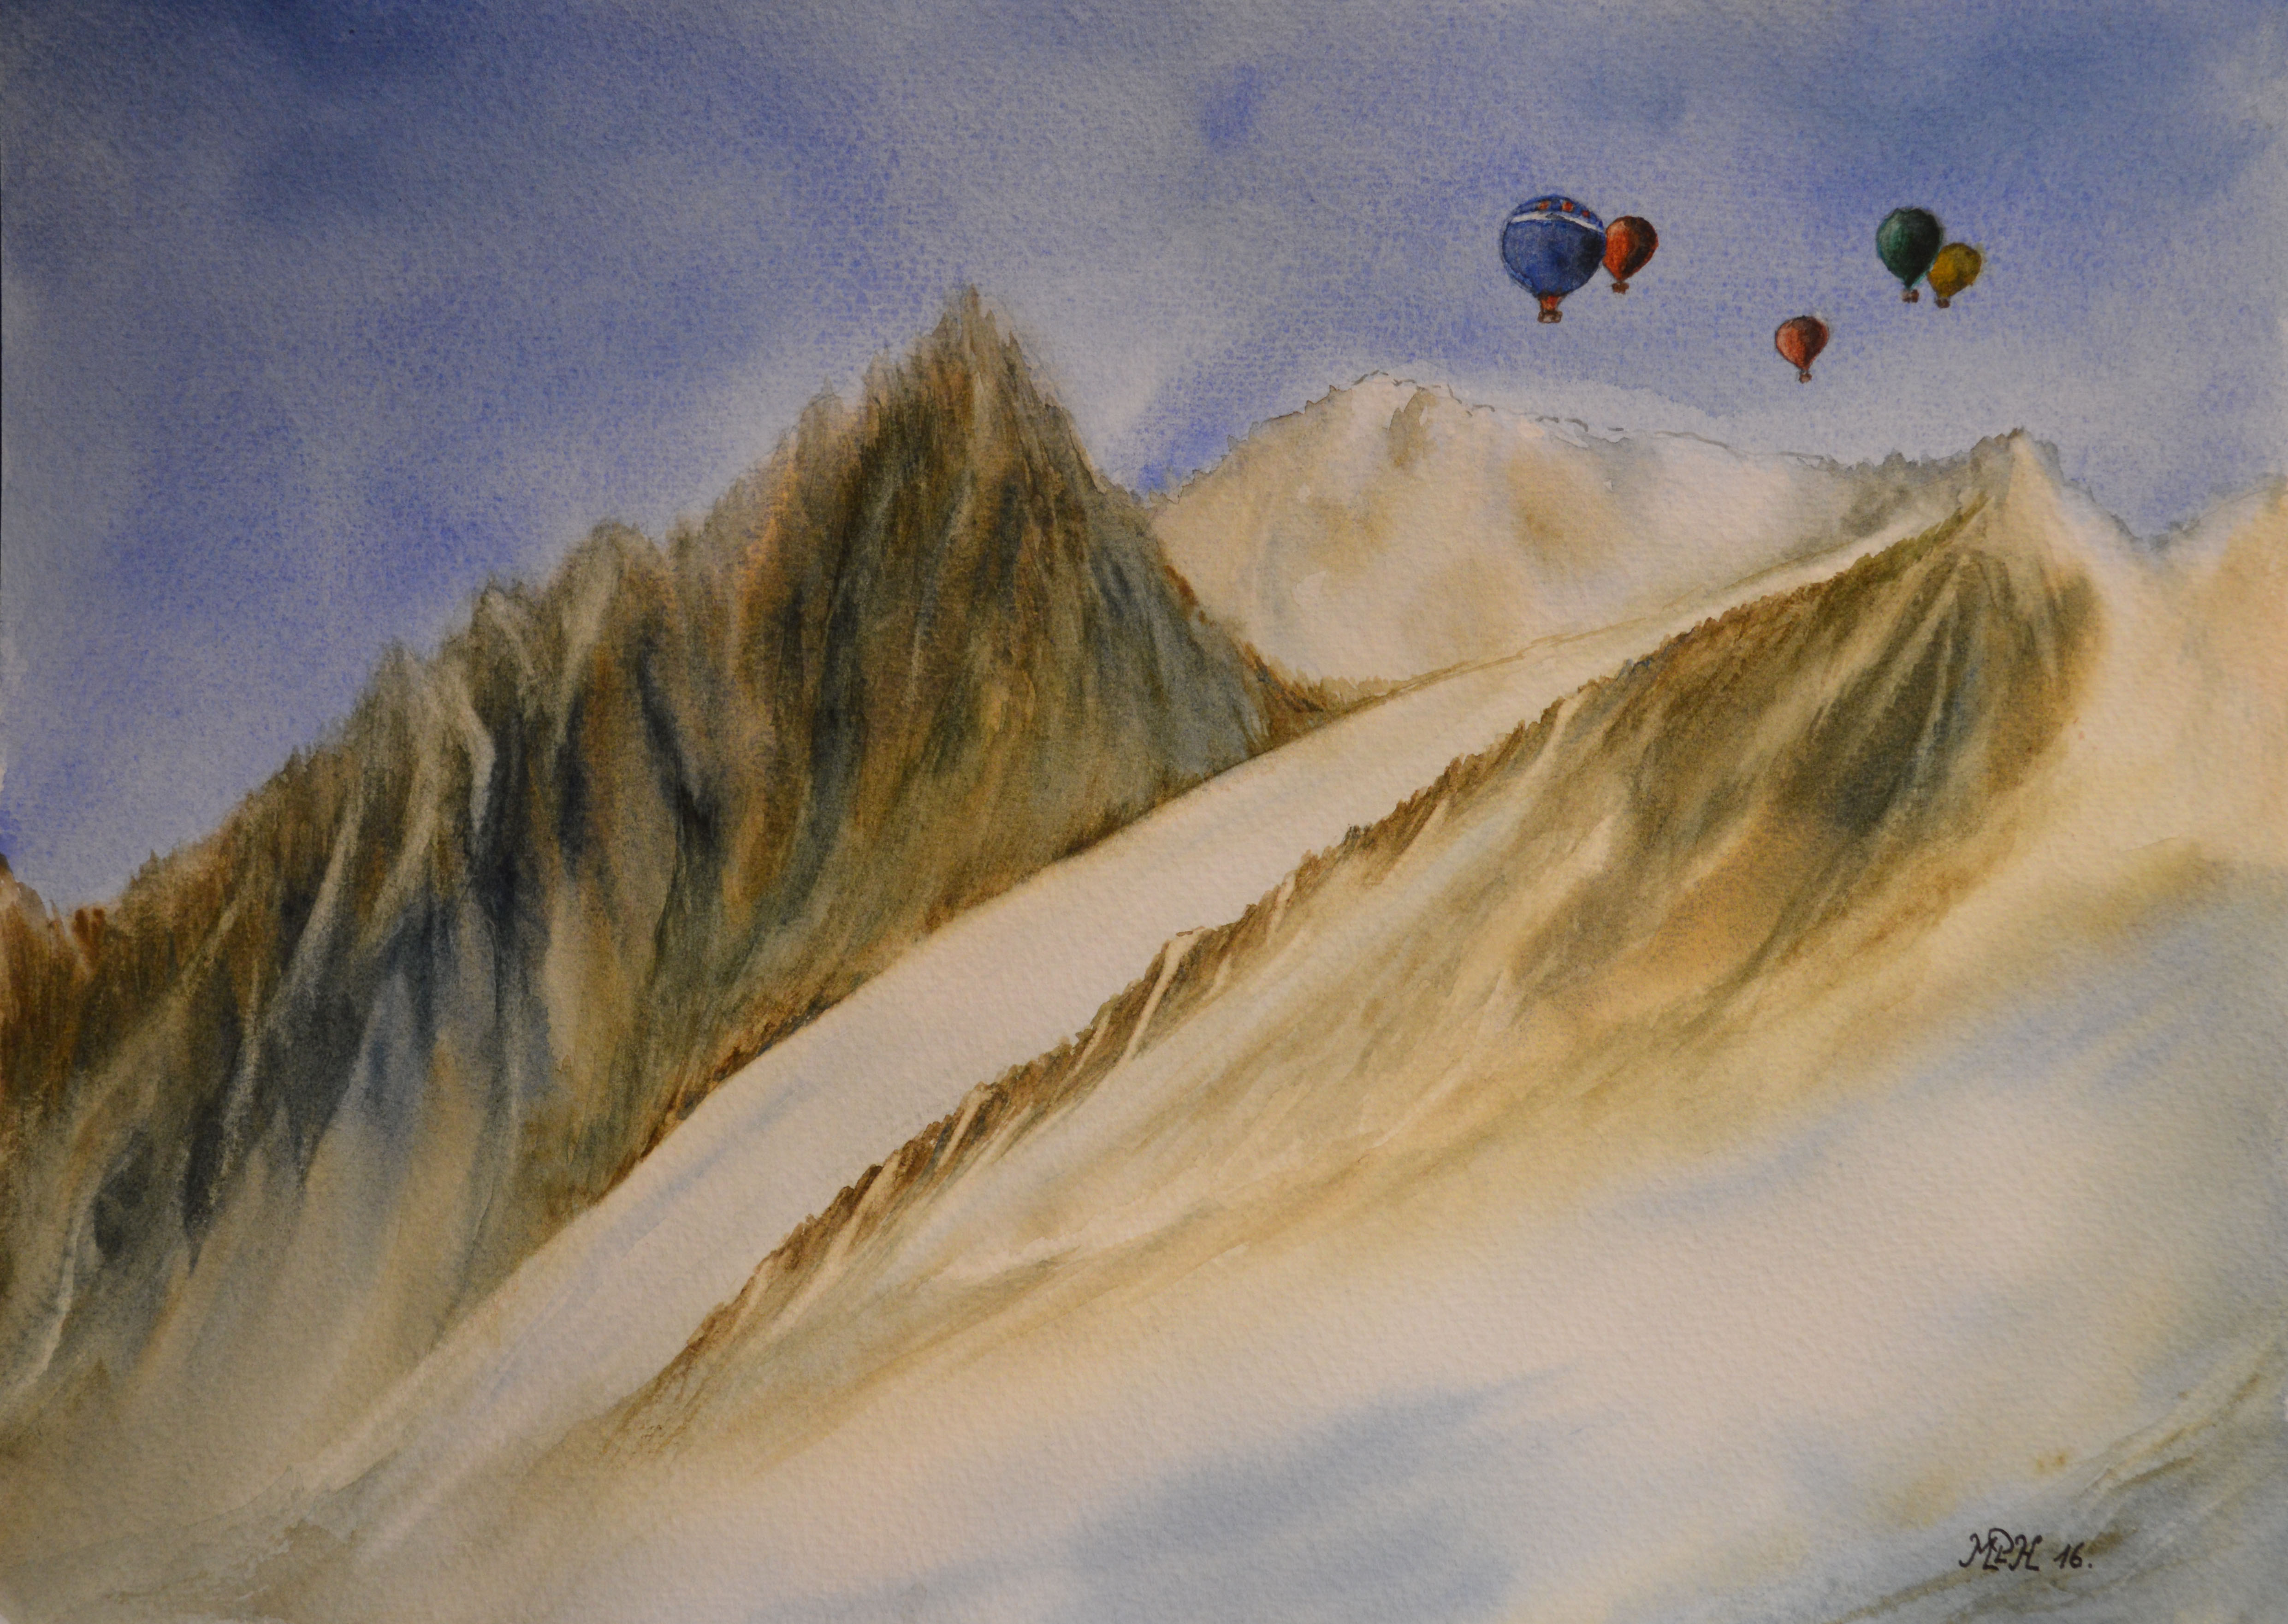 Aquarelle n°58: "Paysage hivernal de montagne"